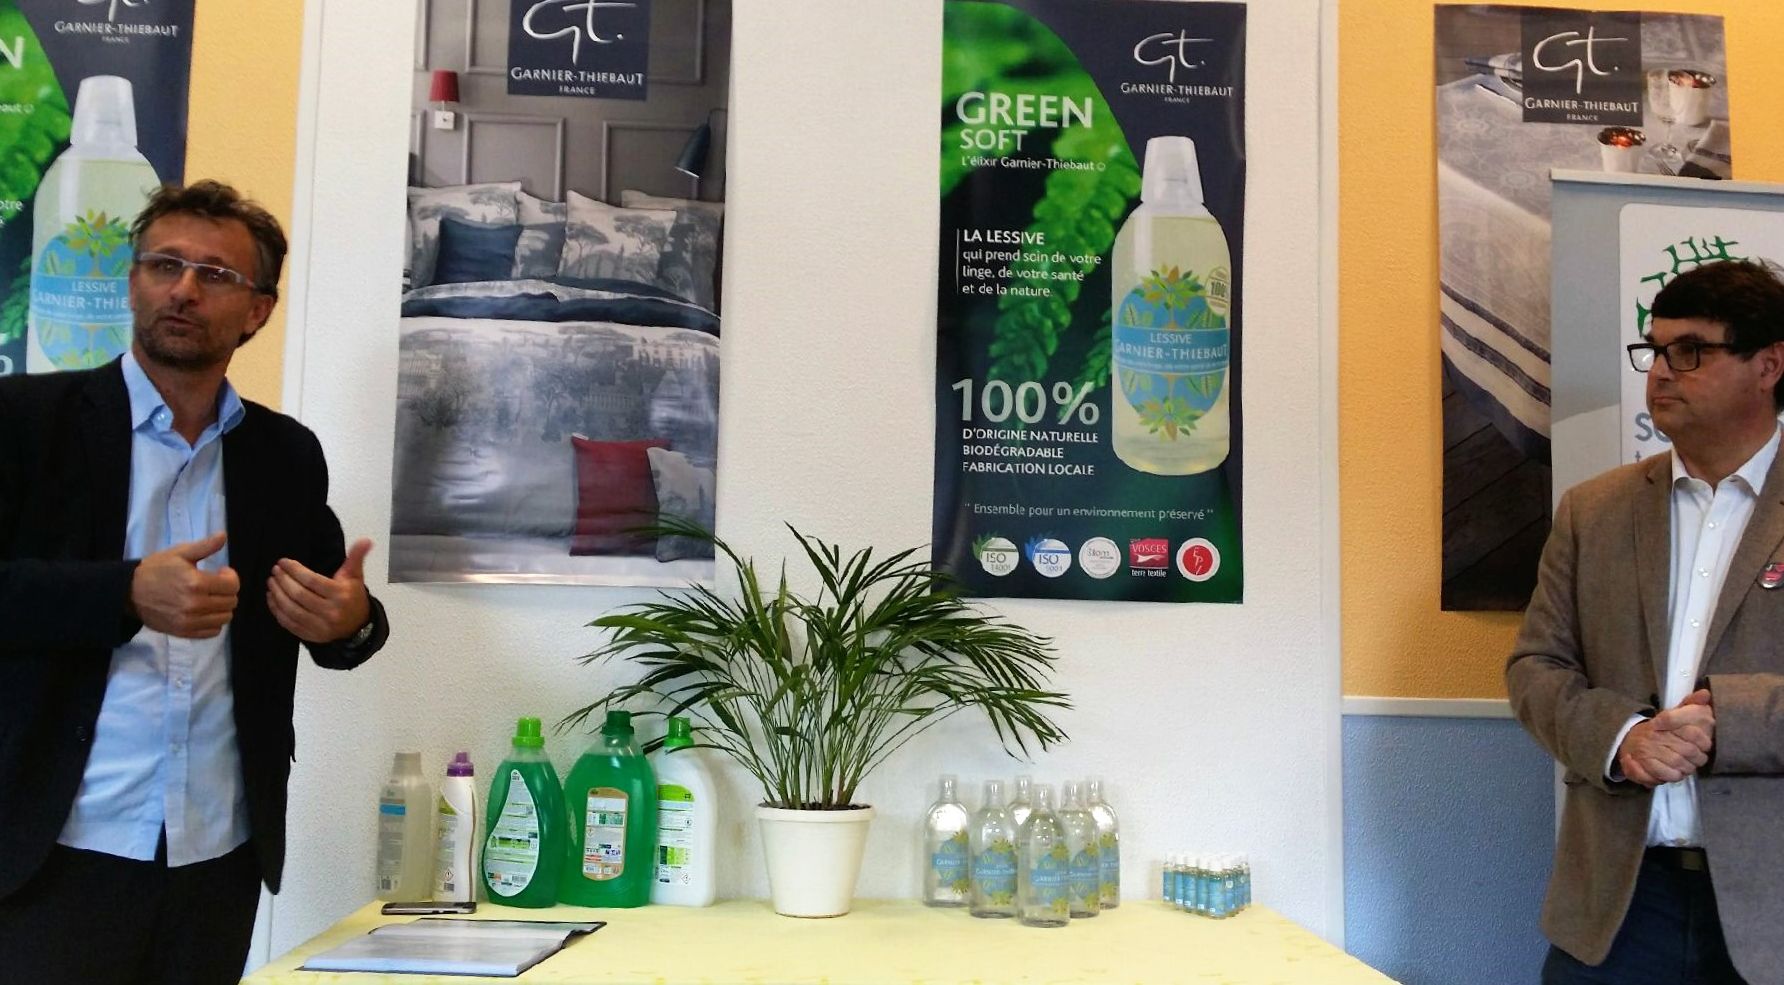 Gérardmer : Garnier-Thiebaut et Salveco lancent une lessive 100% biodégradable